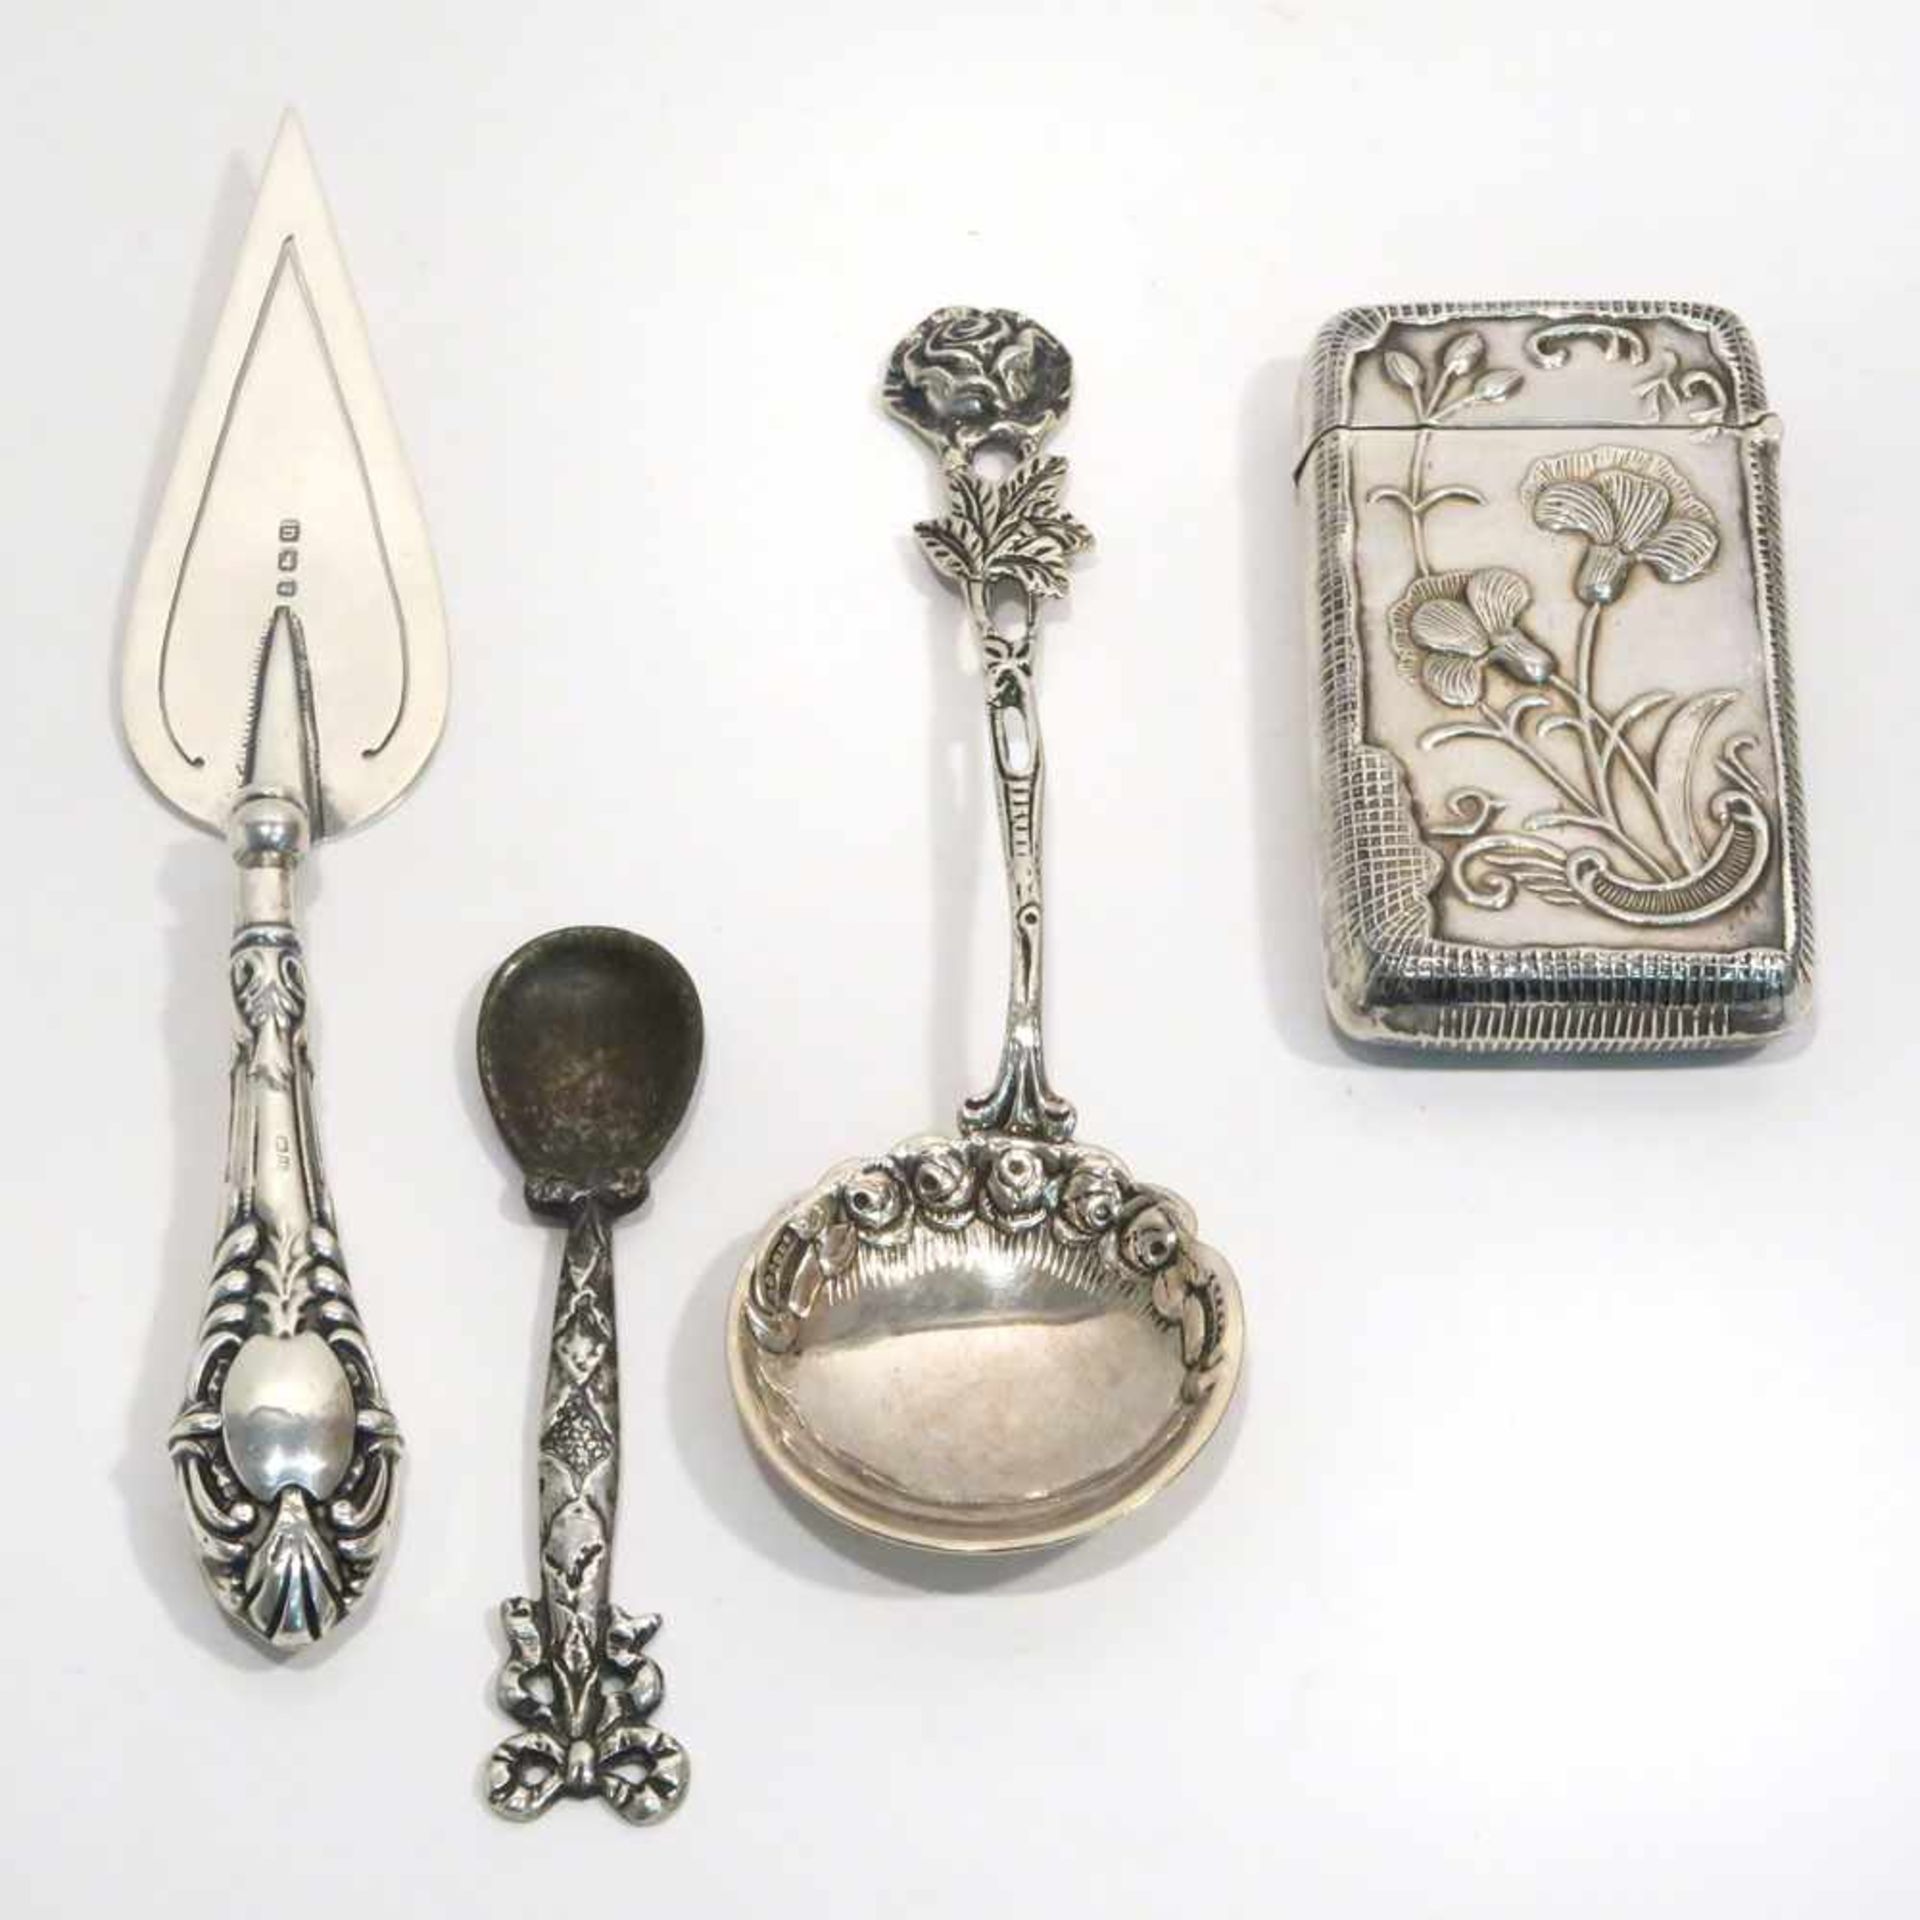 Pralinenheber, zwei Löffelchen und StreichholzetuiEngland u.a. Silber. Verschiedene Formen, Dekore